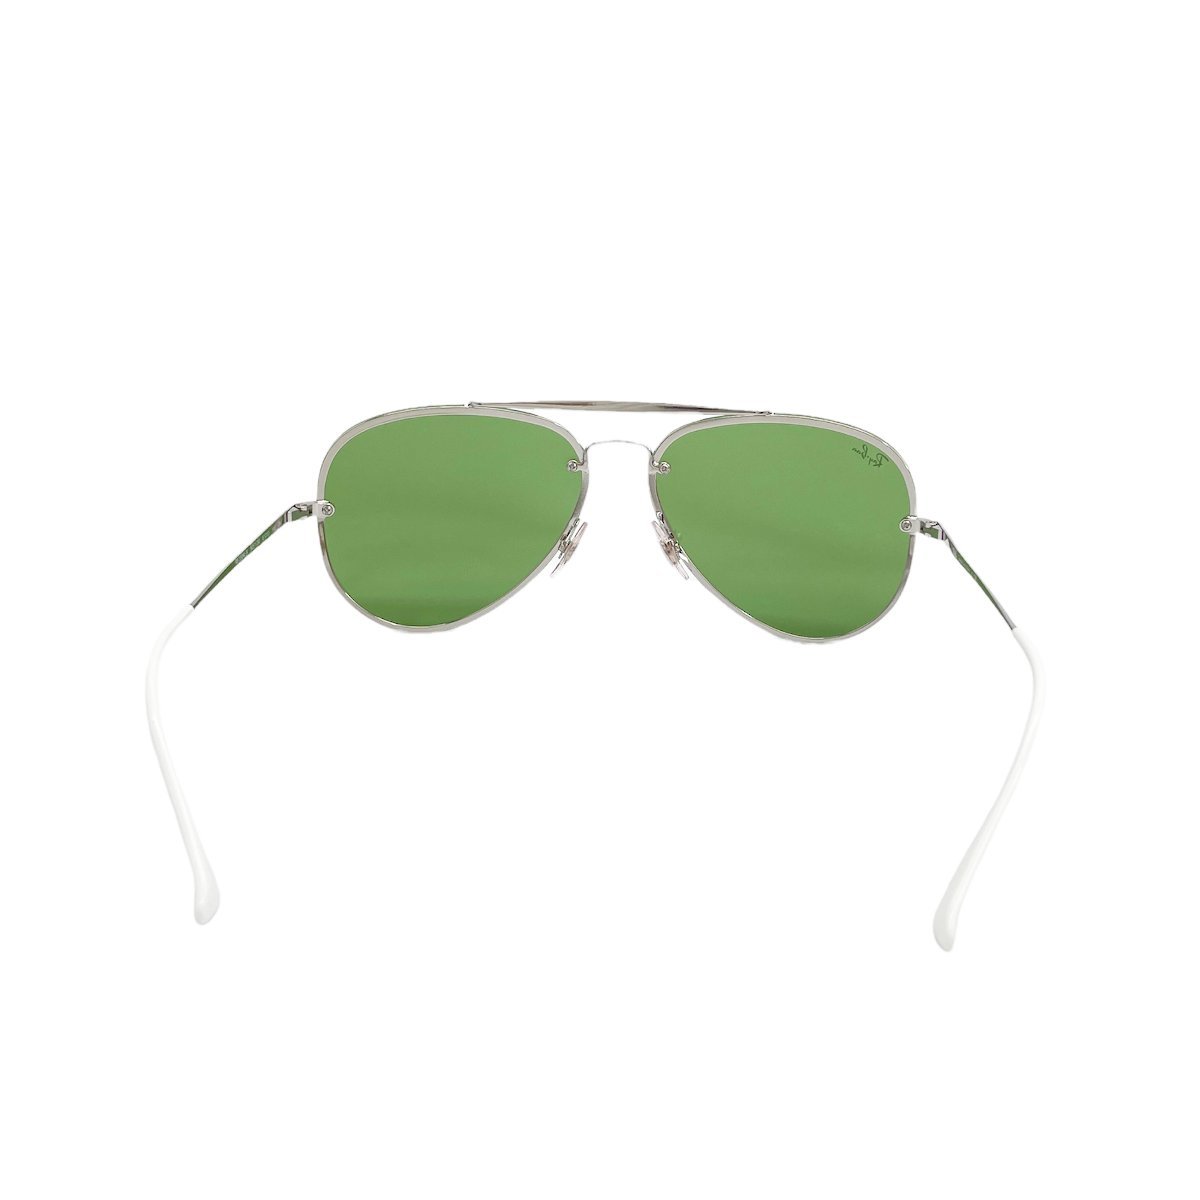 # 1 иен ~ прекрасный товар # Ray Ban RayBan # солнцезащитные очки Blaze авиатор RB3584N 9051/30 # серебряный темно-зеленый зеркало линзы очки 